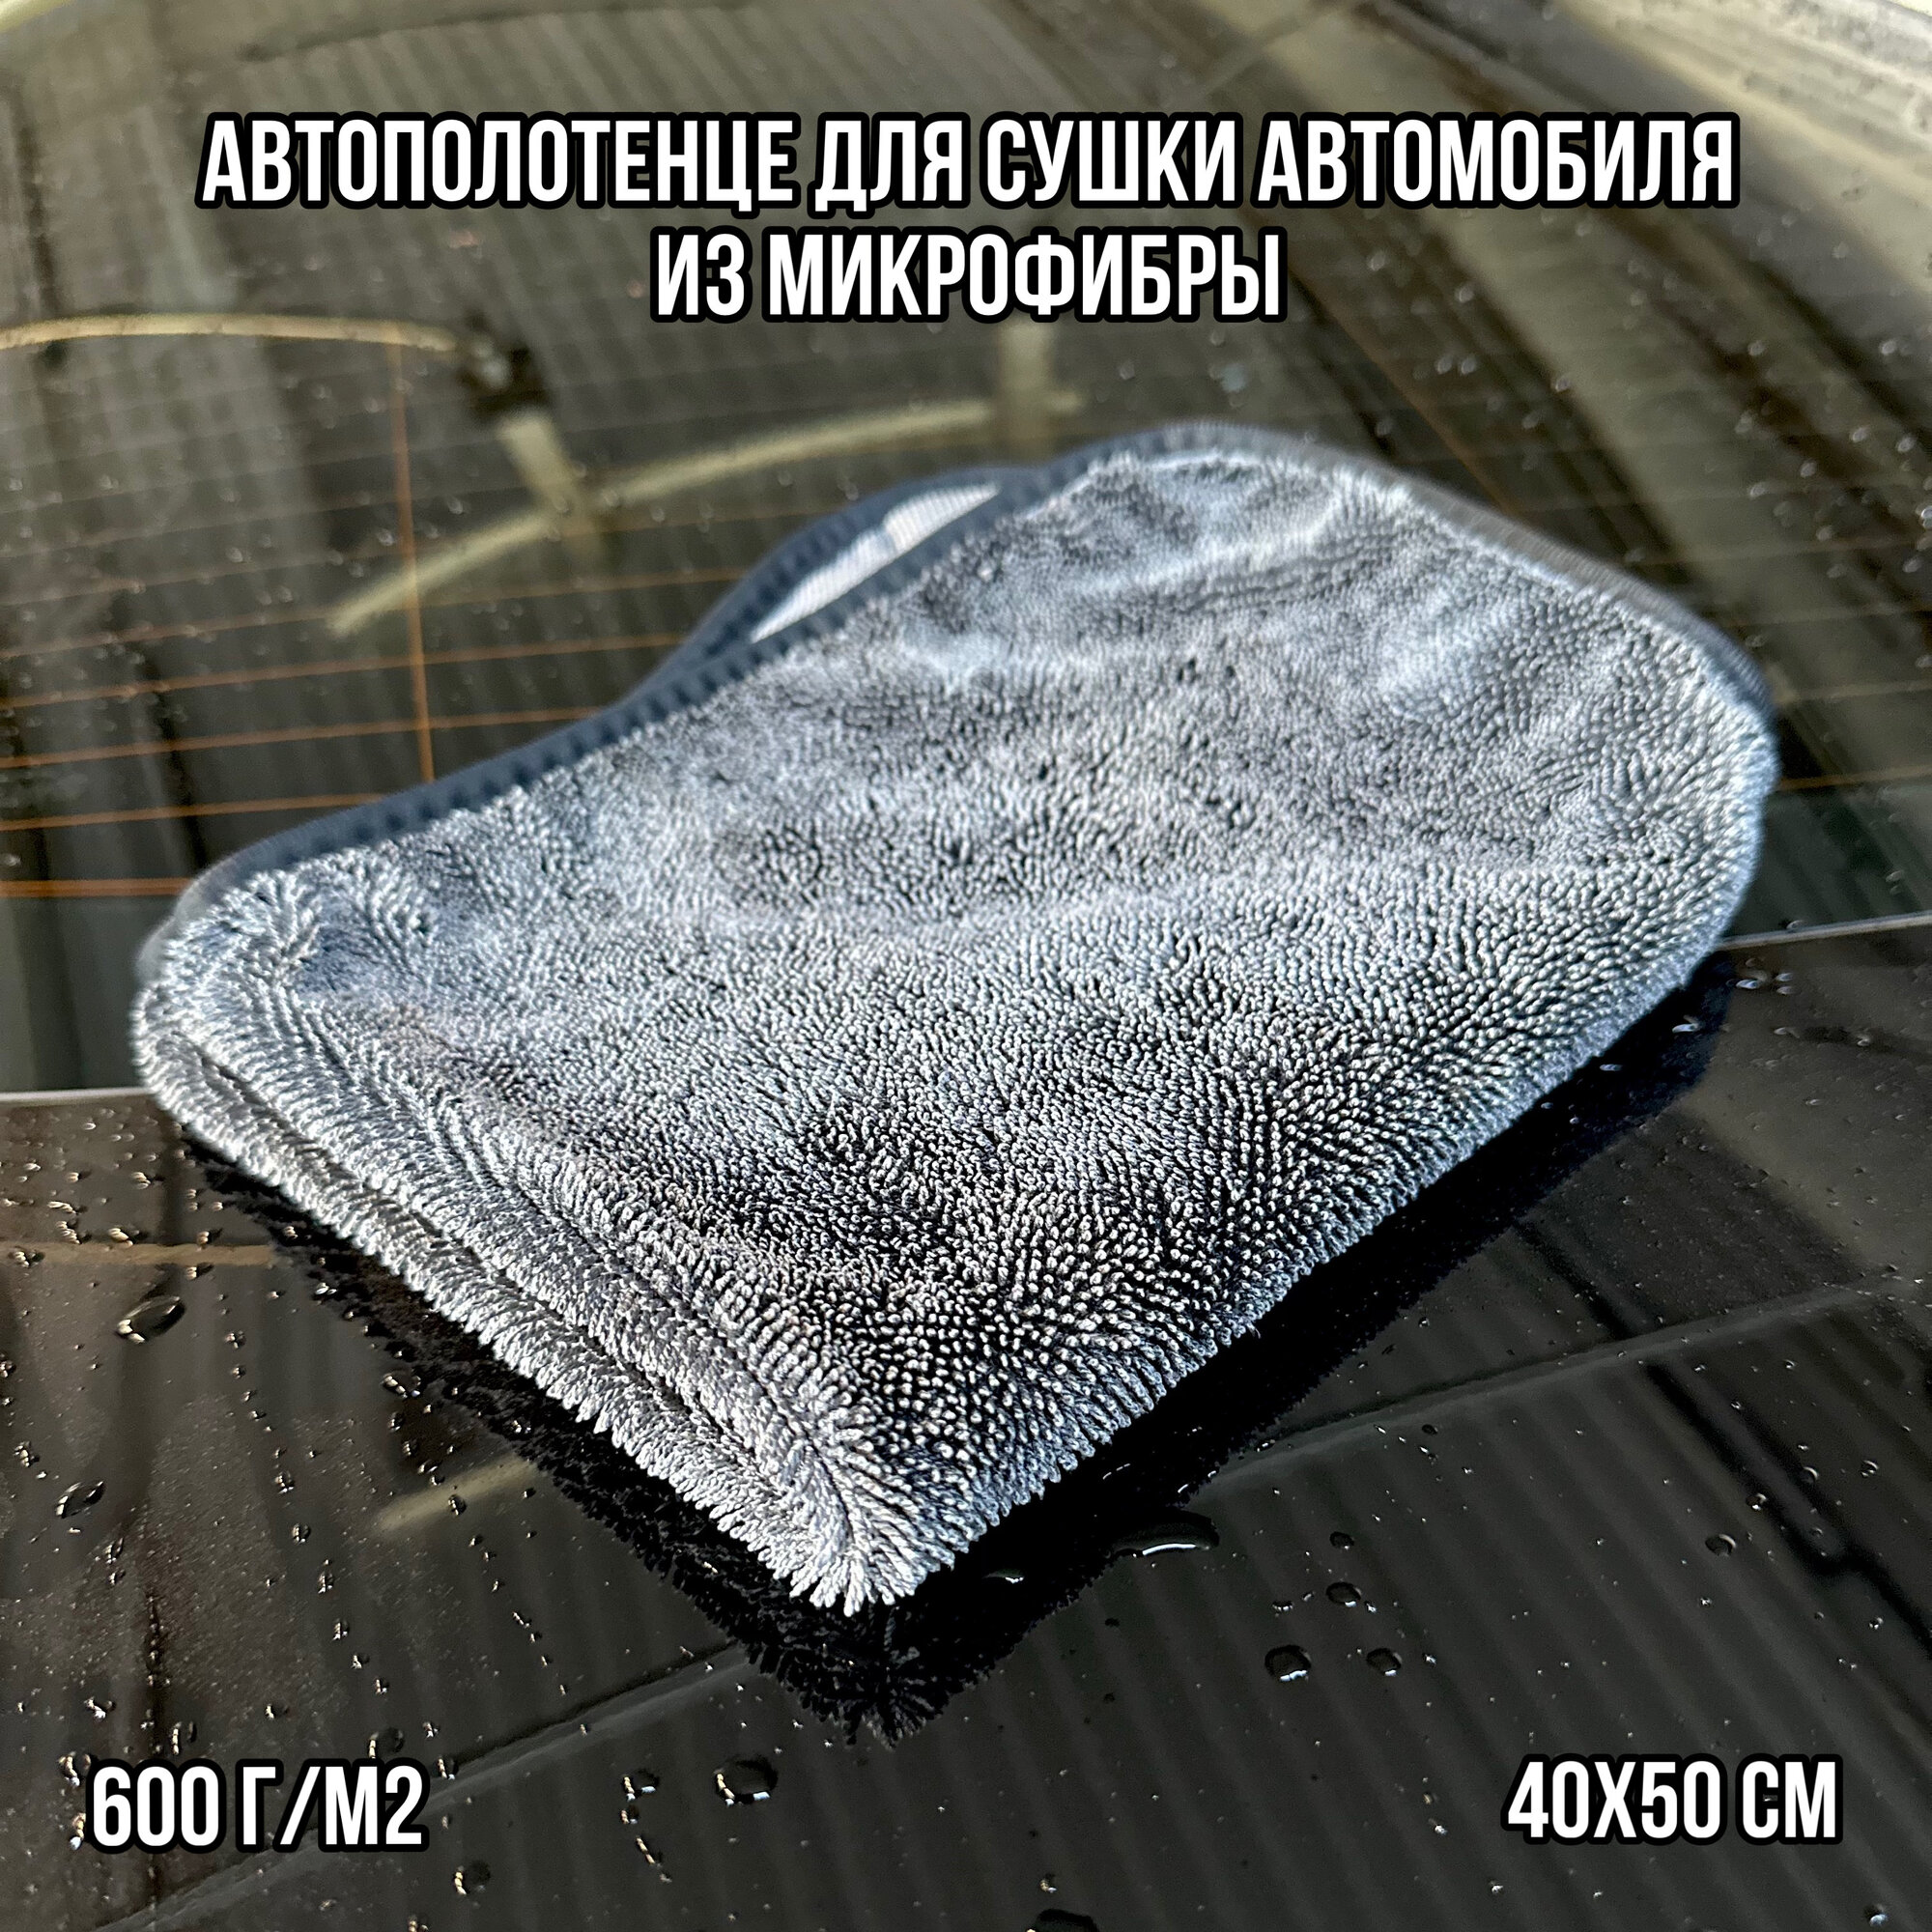 Автополотенце для сушки автомобиля из микрофибры 40x50 см